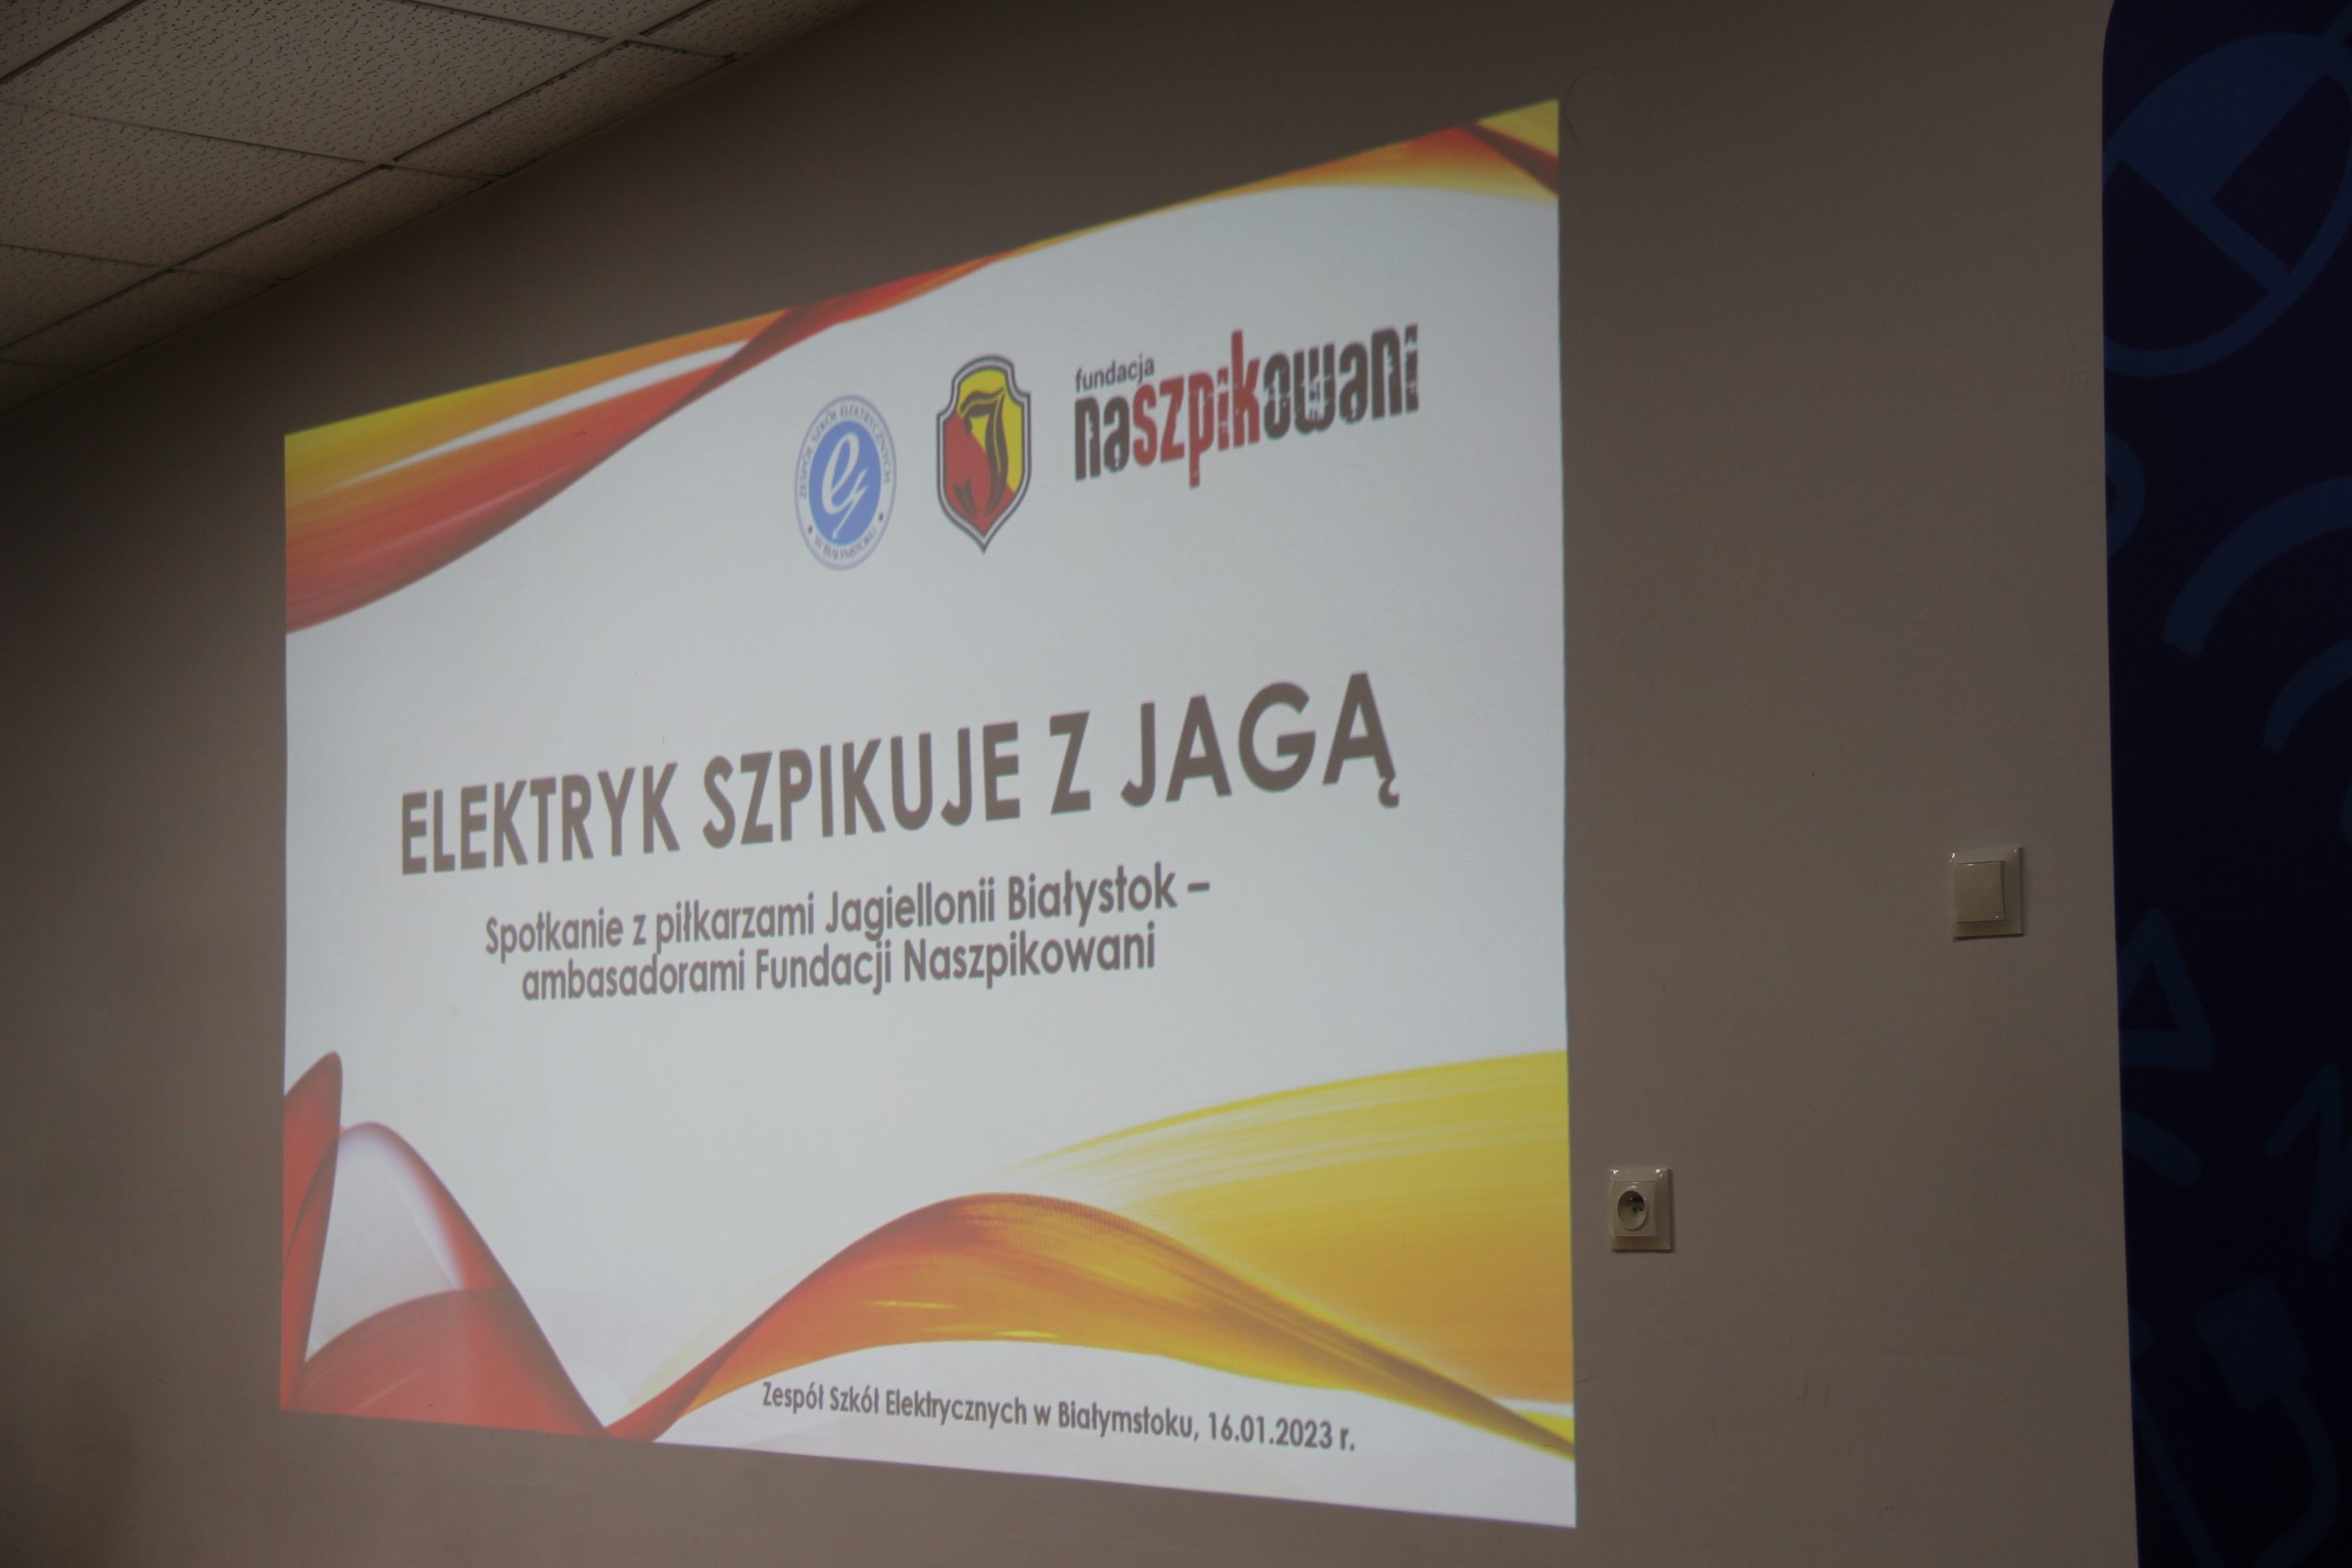 Elektryk szpikuje z Jagą - spotkanie z piłkarzami Jagiellonii Białystok - ambasadorami Fundacji Naszpikowani